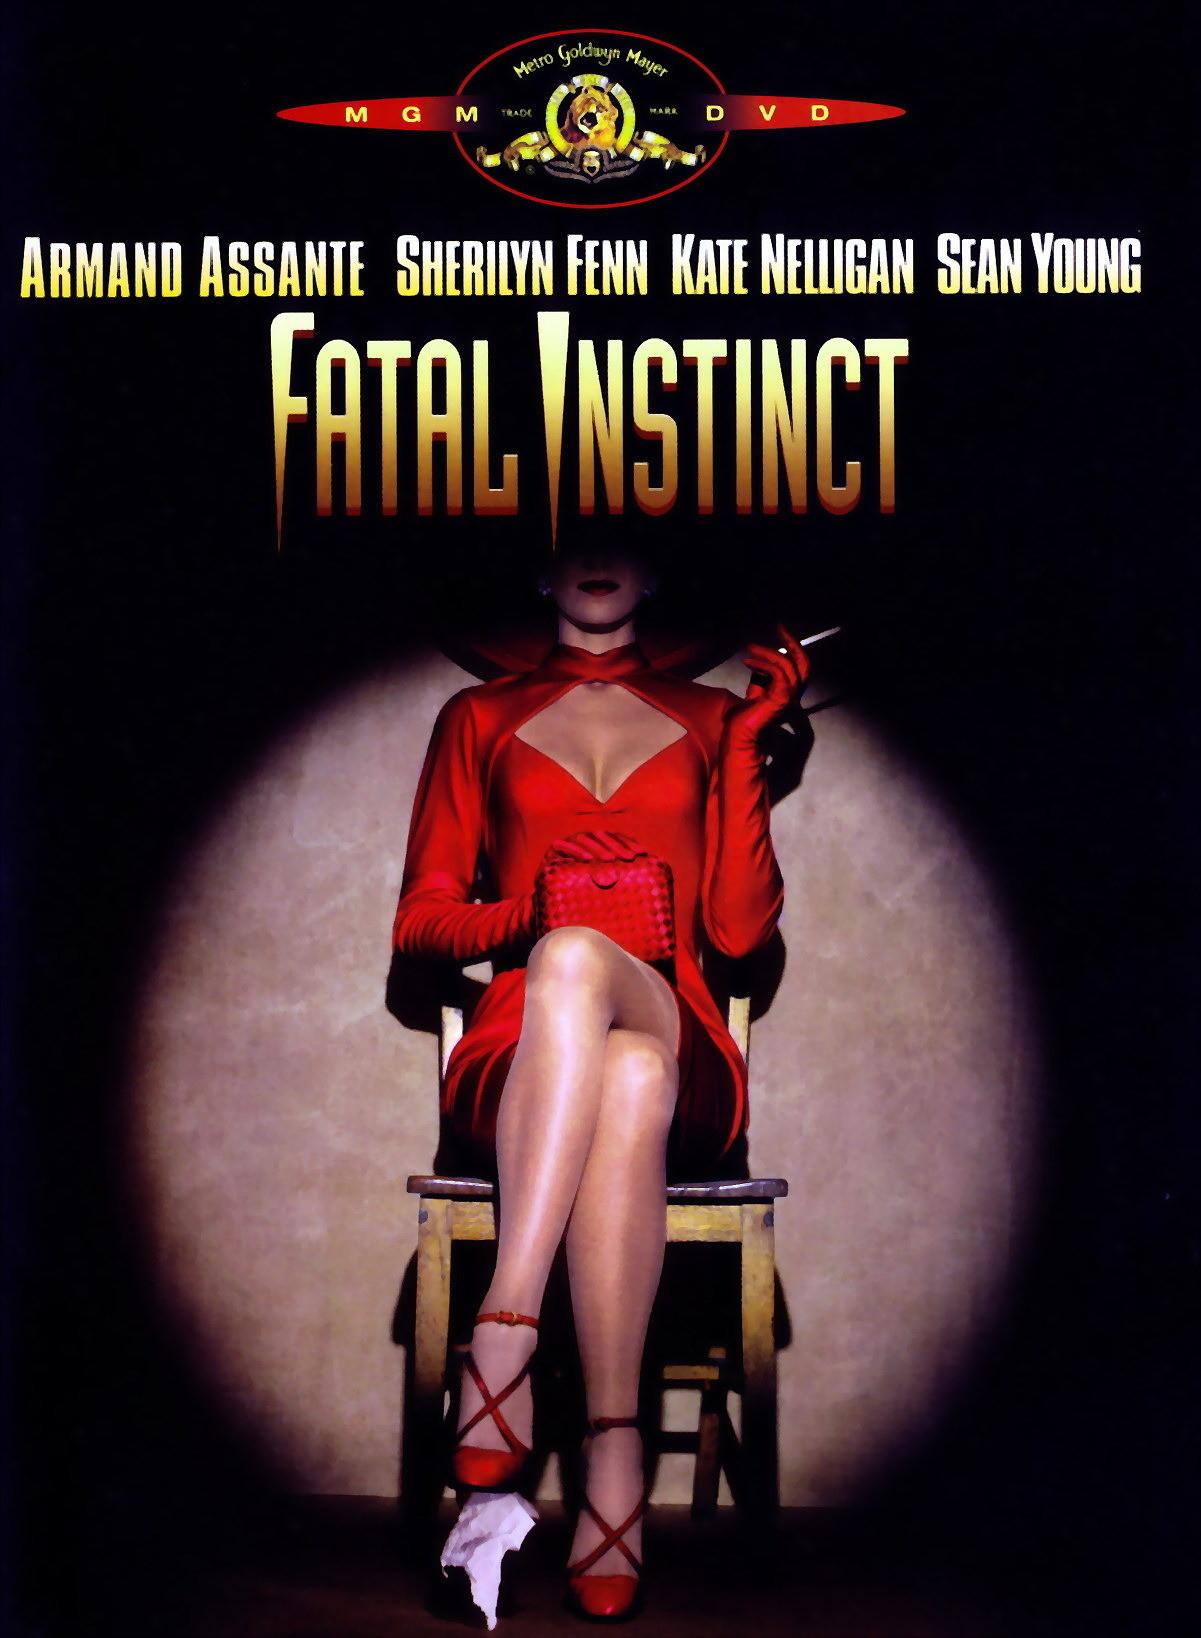 Végzetes ösztön (Fatal Instinct) 1993.